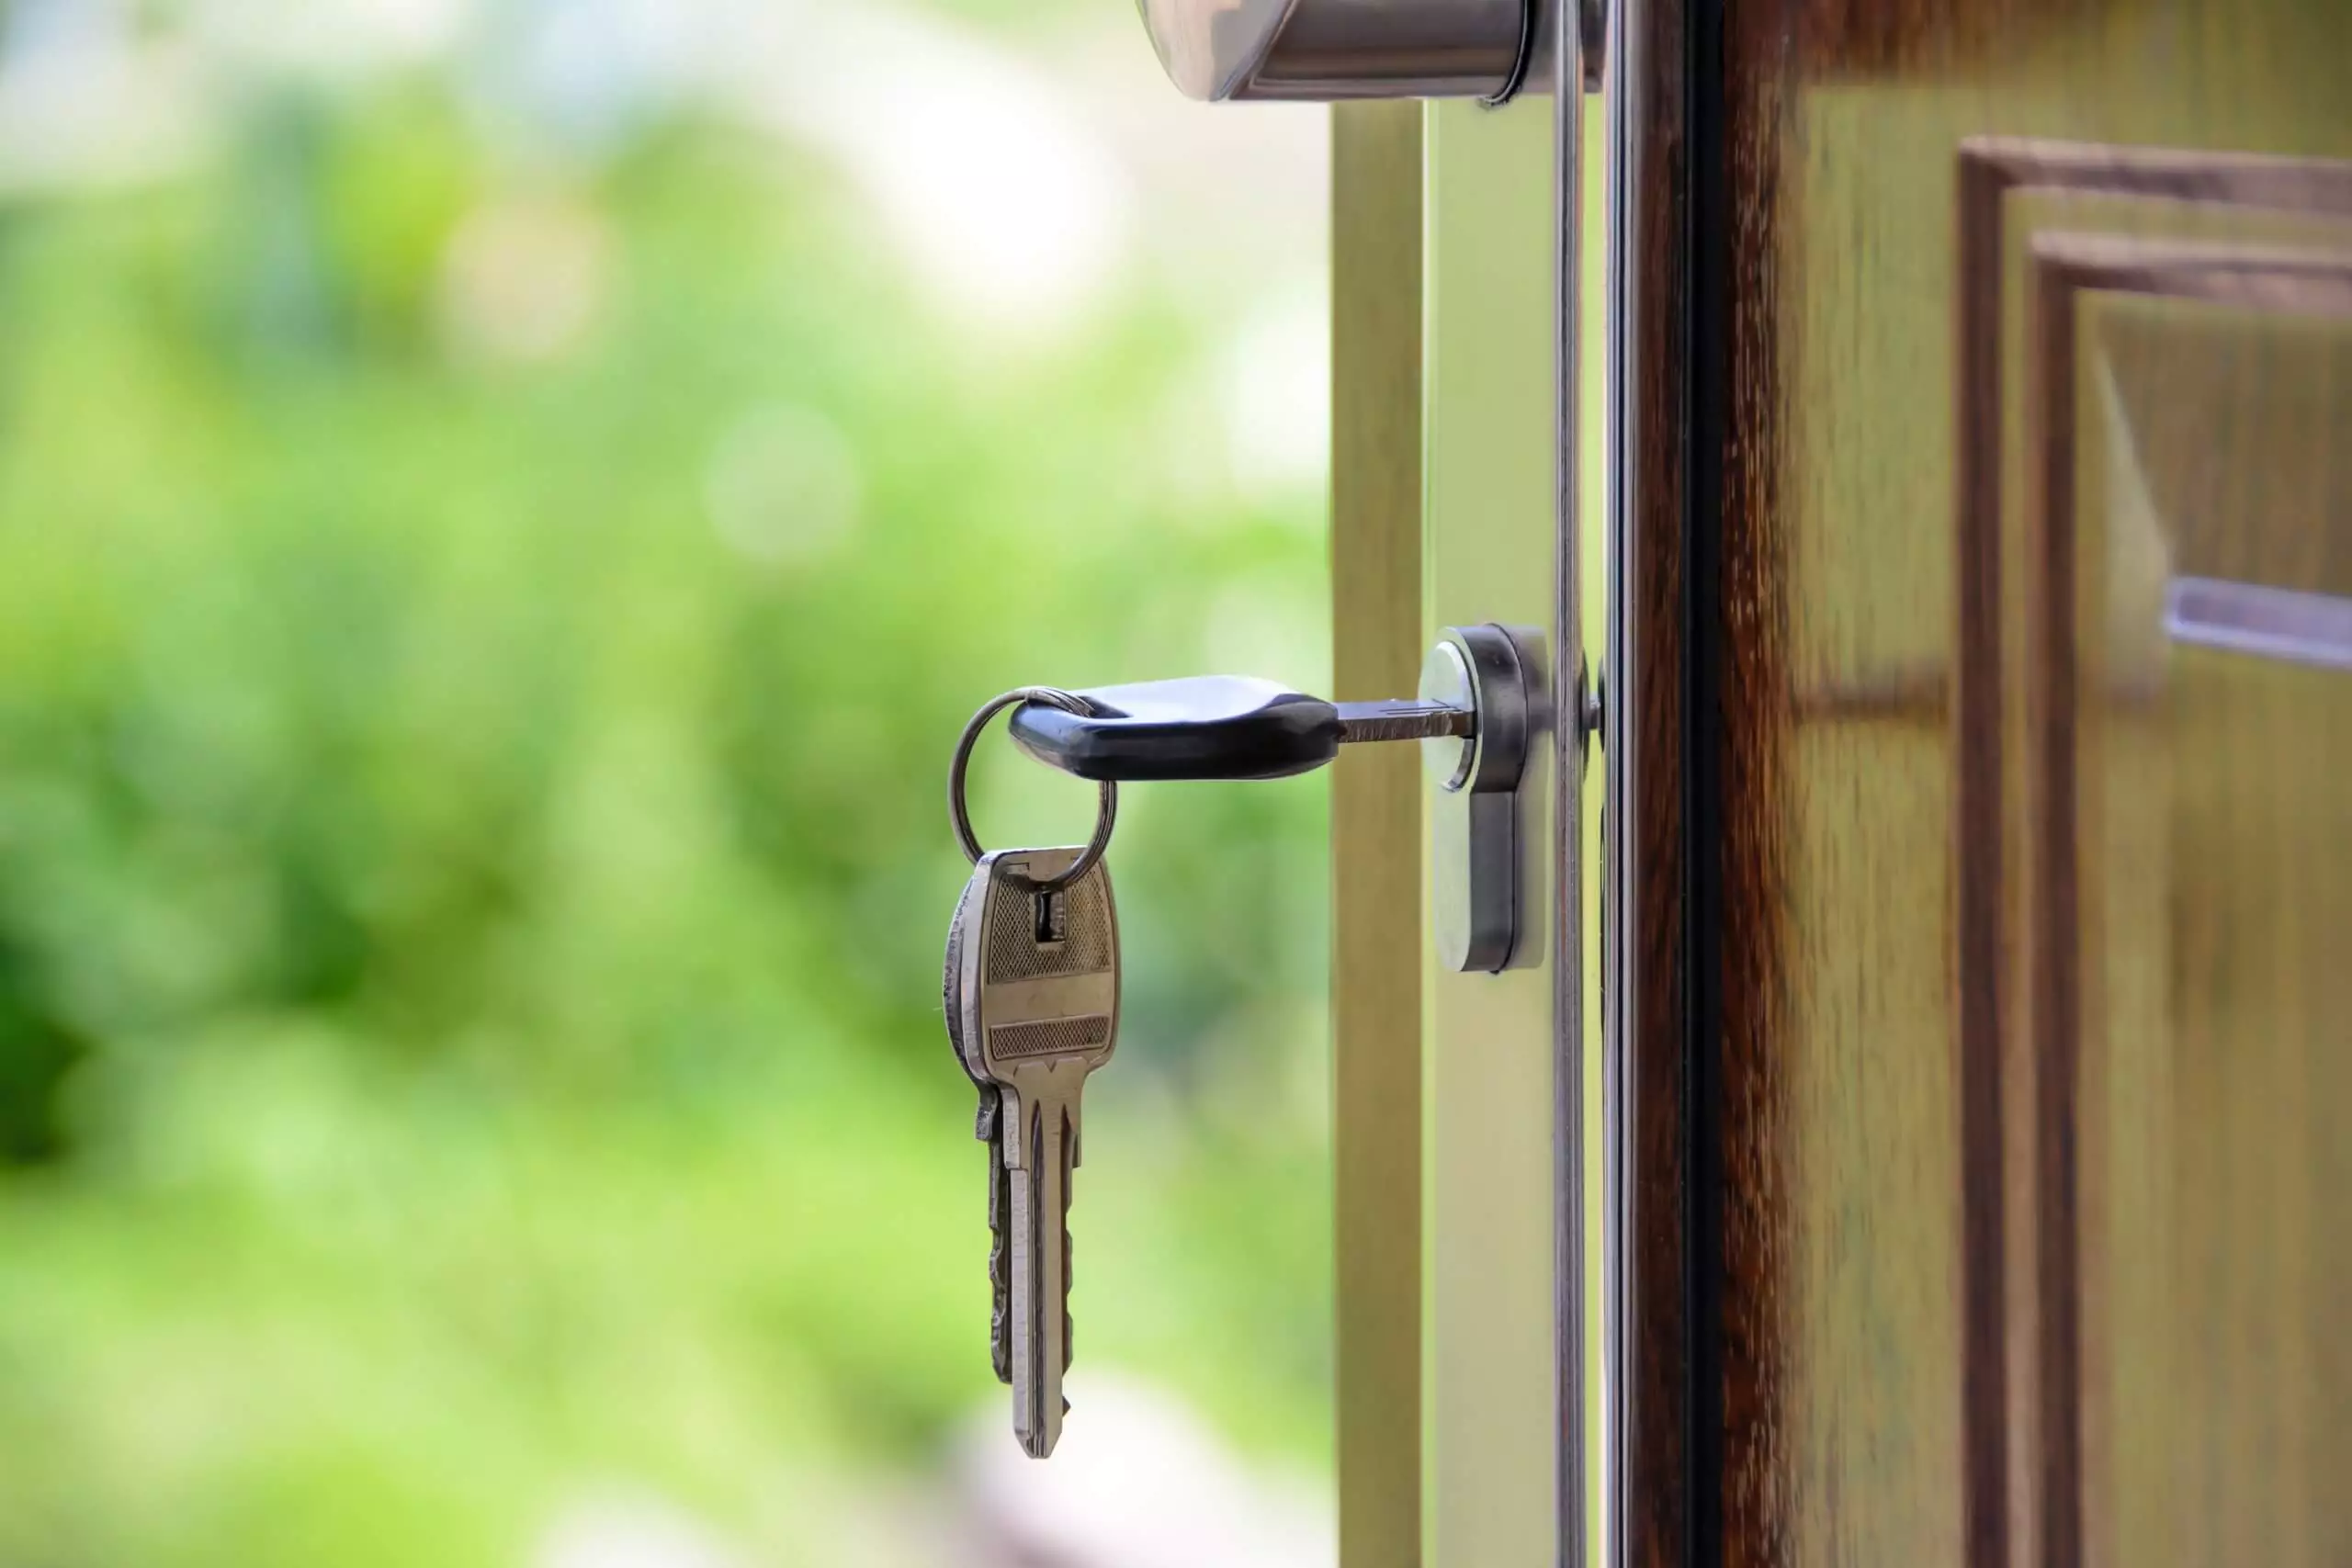 Klucze w drzwiach - Homely Estates - Biuro Nieruchomości - Zdjęcie w tle